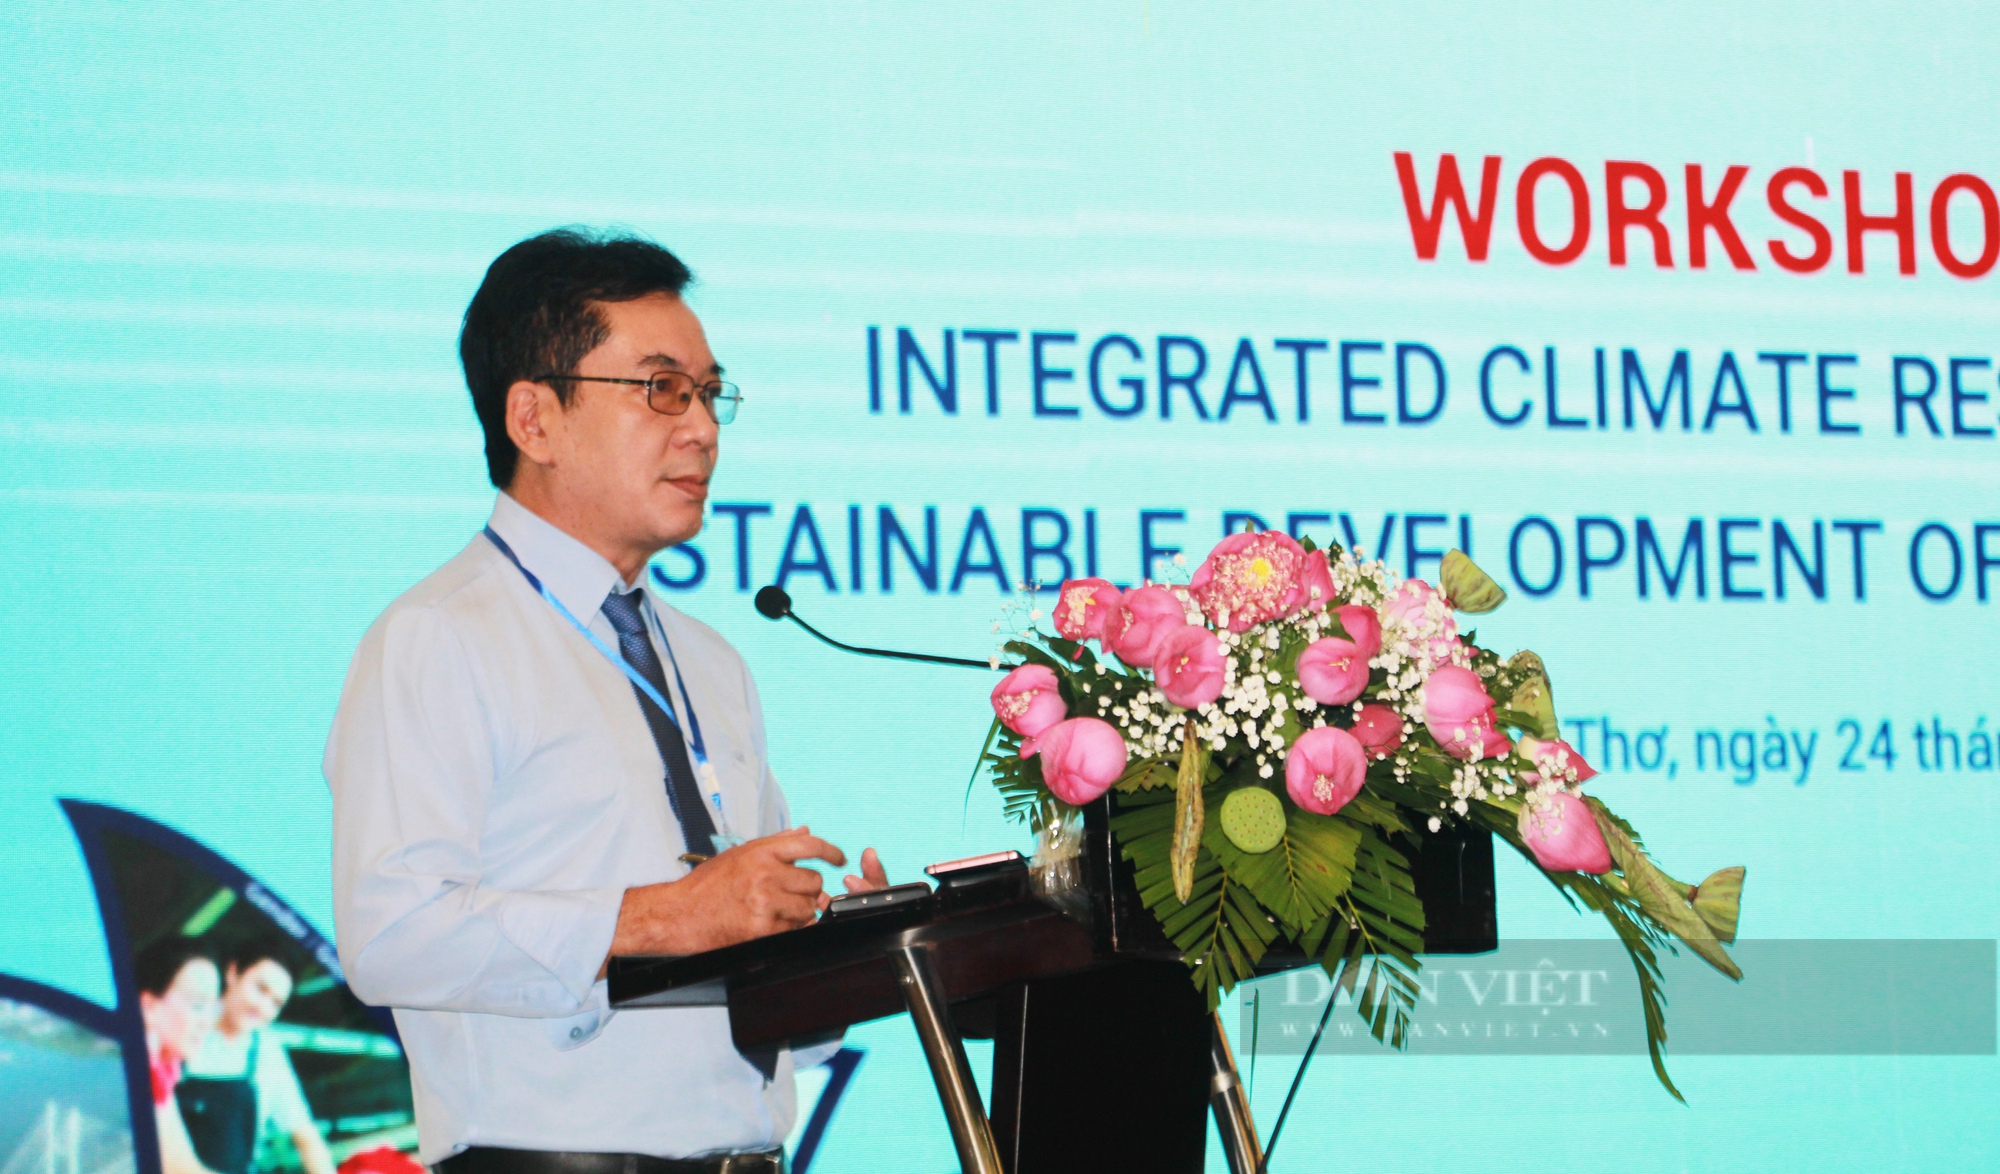 Bộ trưởng Lê Minh Hoan: Không kể lể, than phiền nữa về biến đổi khí hậu - Ảnh 2.